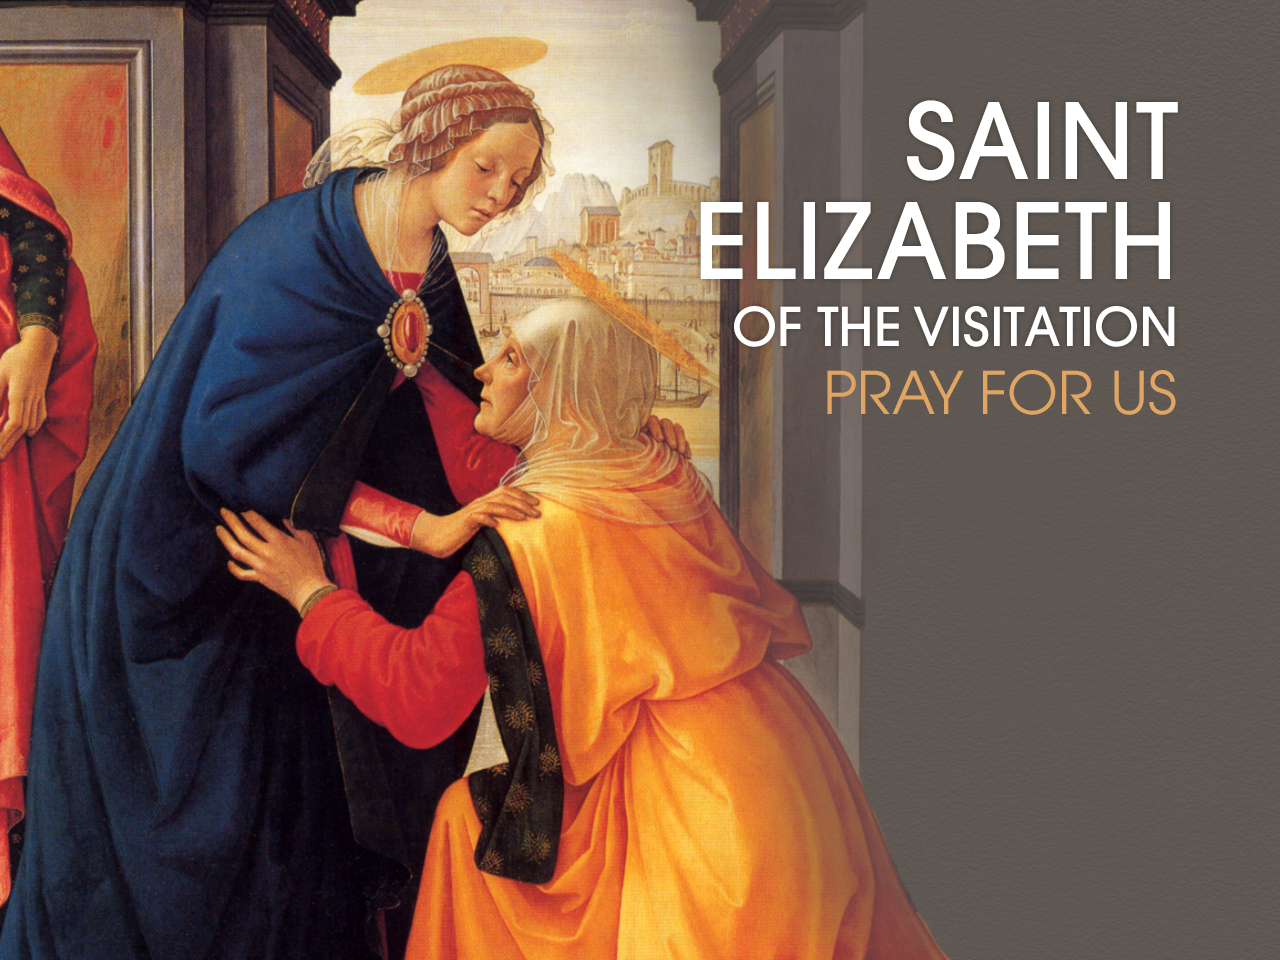 St. Elizabeth of the Visitation